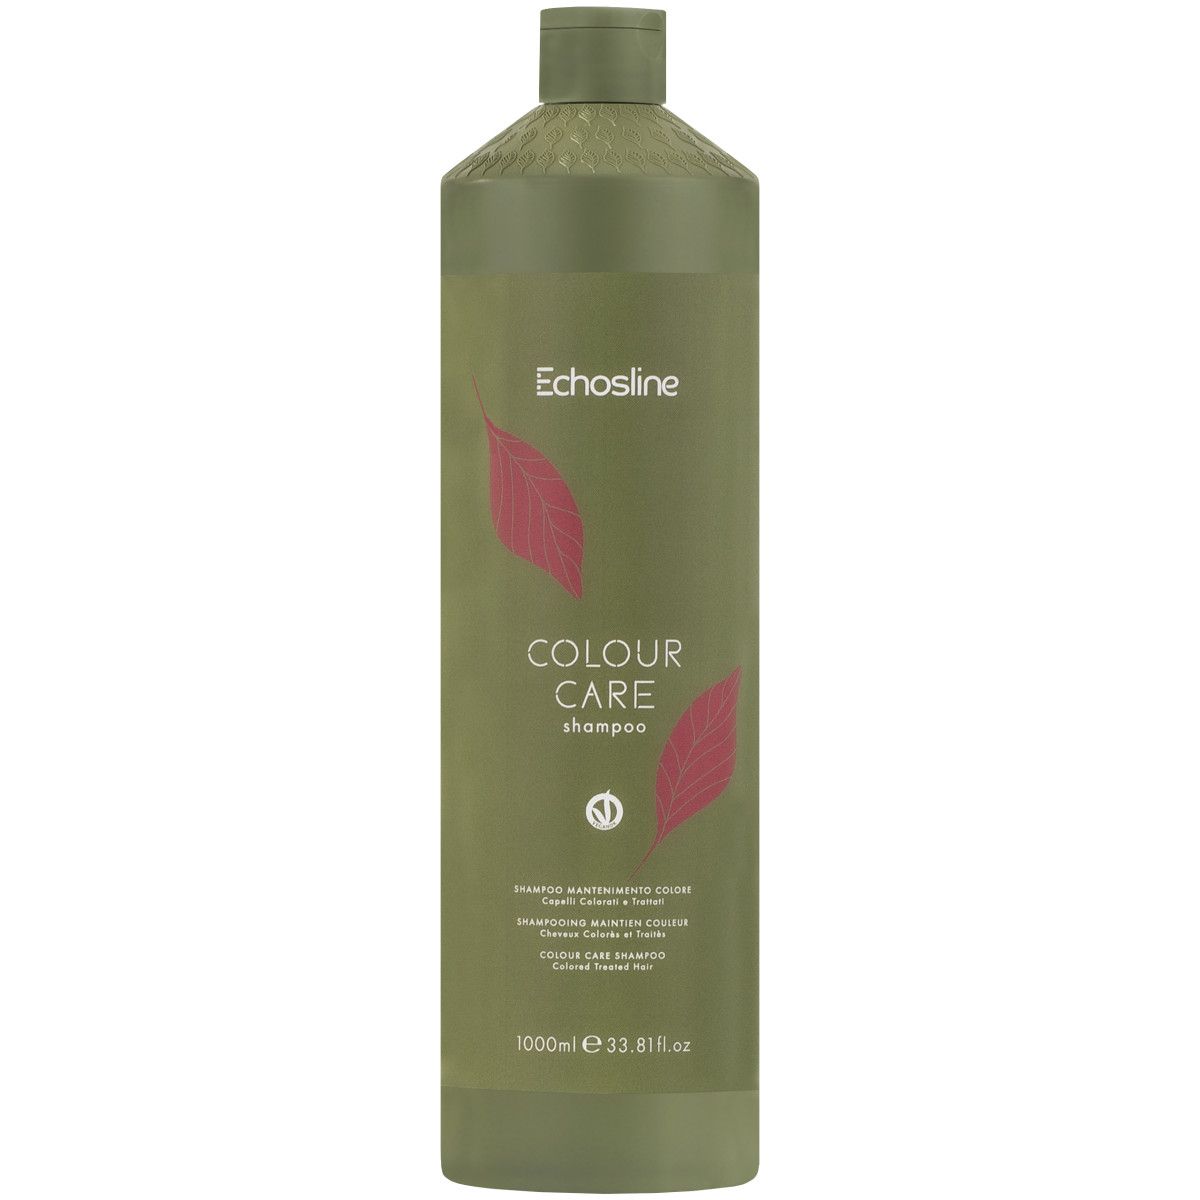 ECHOSLINE Colour Care - szampon ochraniający kolor włosów, 1000ml